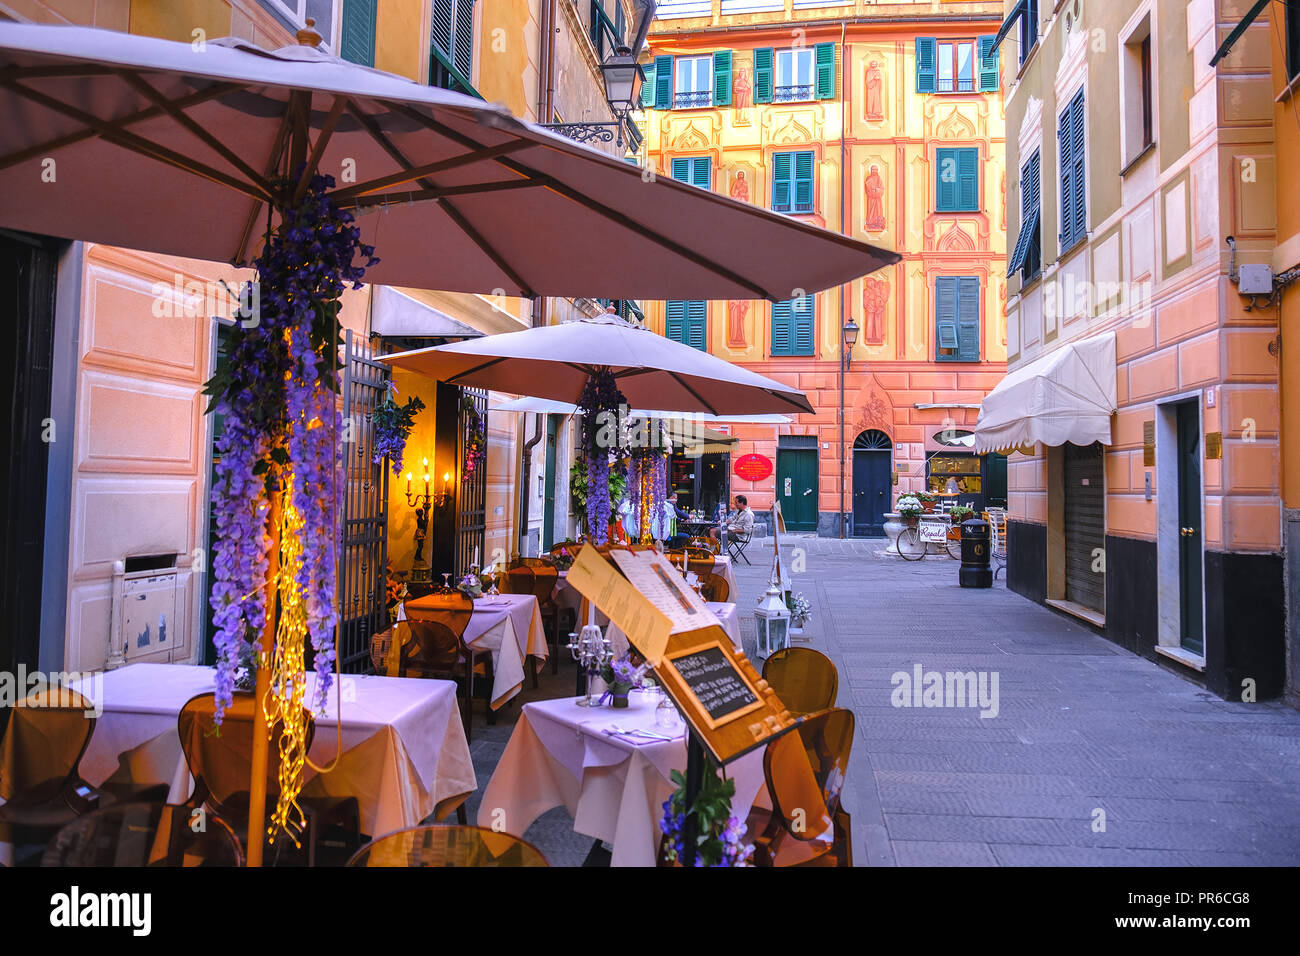 Bistro italiano romántico restaurante para cenar en Italia Foto de stock